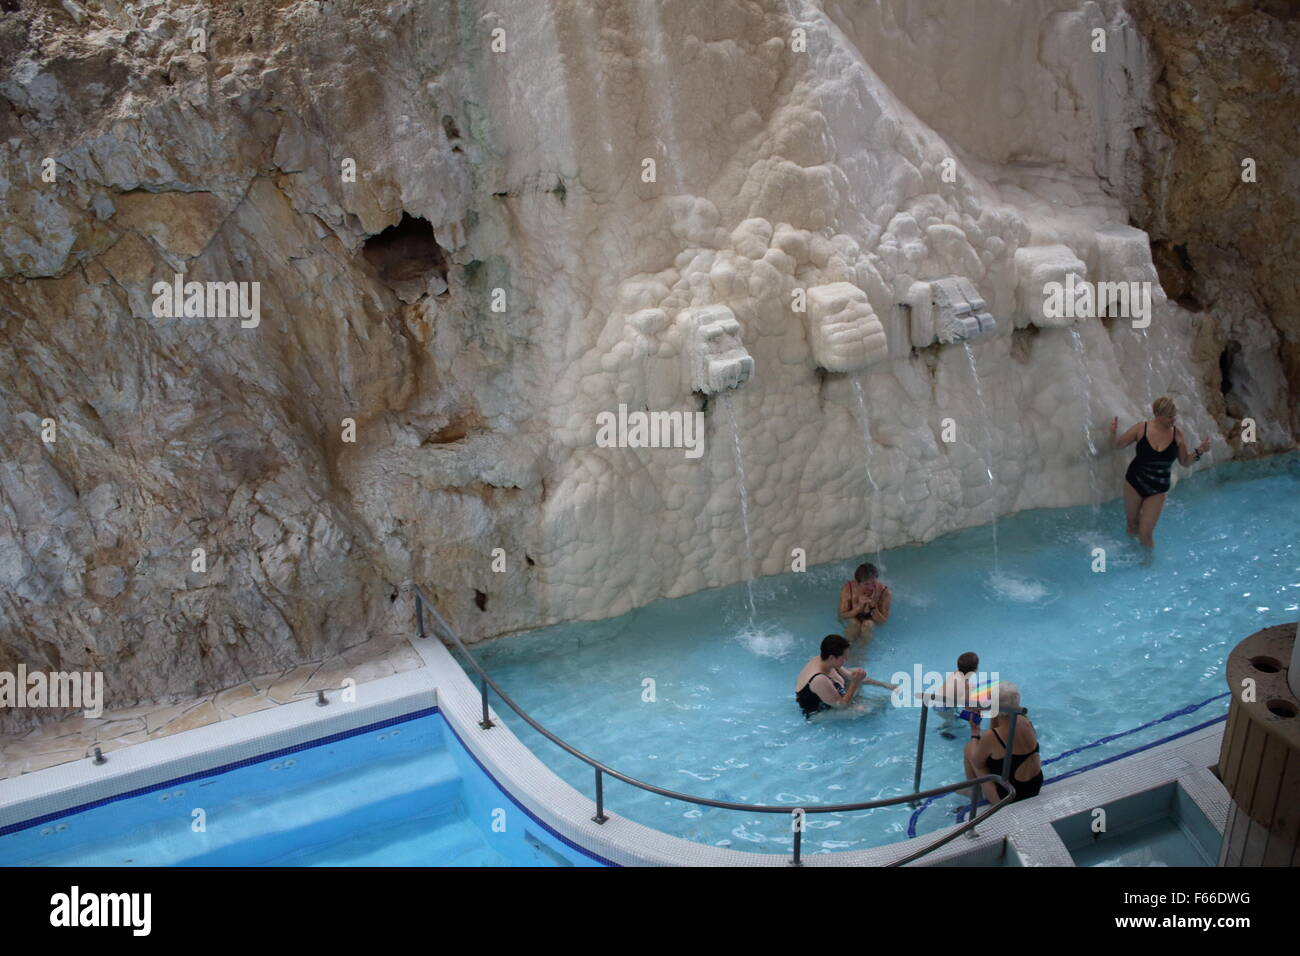 En Miskolc, Hungría 12th, noviembre de 2015 personas disfrutan de estancia en Miskolc Tapolca Barlangfurdo Cueva Baño (BarlangfŸrd?). La cueva es un baño baño termal en una cueva natural en Miskolctapolca, que es parte de la ciudad de Miskolc, Hungría. El agua termal (temperatura de 30 ¡C a 36 ¡C ) es reputado para reducir el dolor en las articulaciones.El baño de la cueva puede ser visitada todo el año, excepto durante el mes de enero. Crédito: Michal Fludra/Alamy Live News Foto de stock